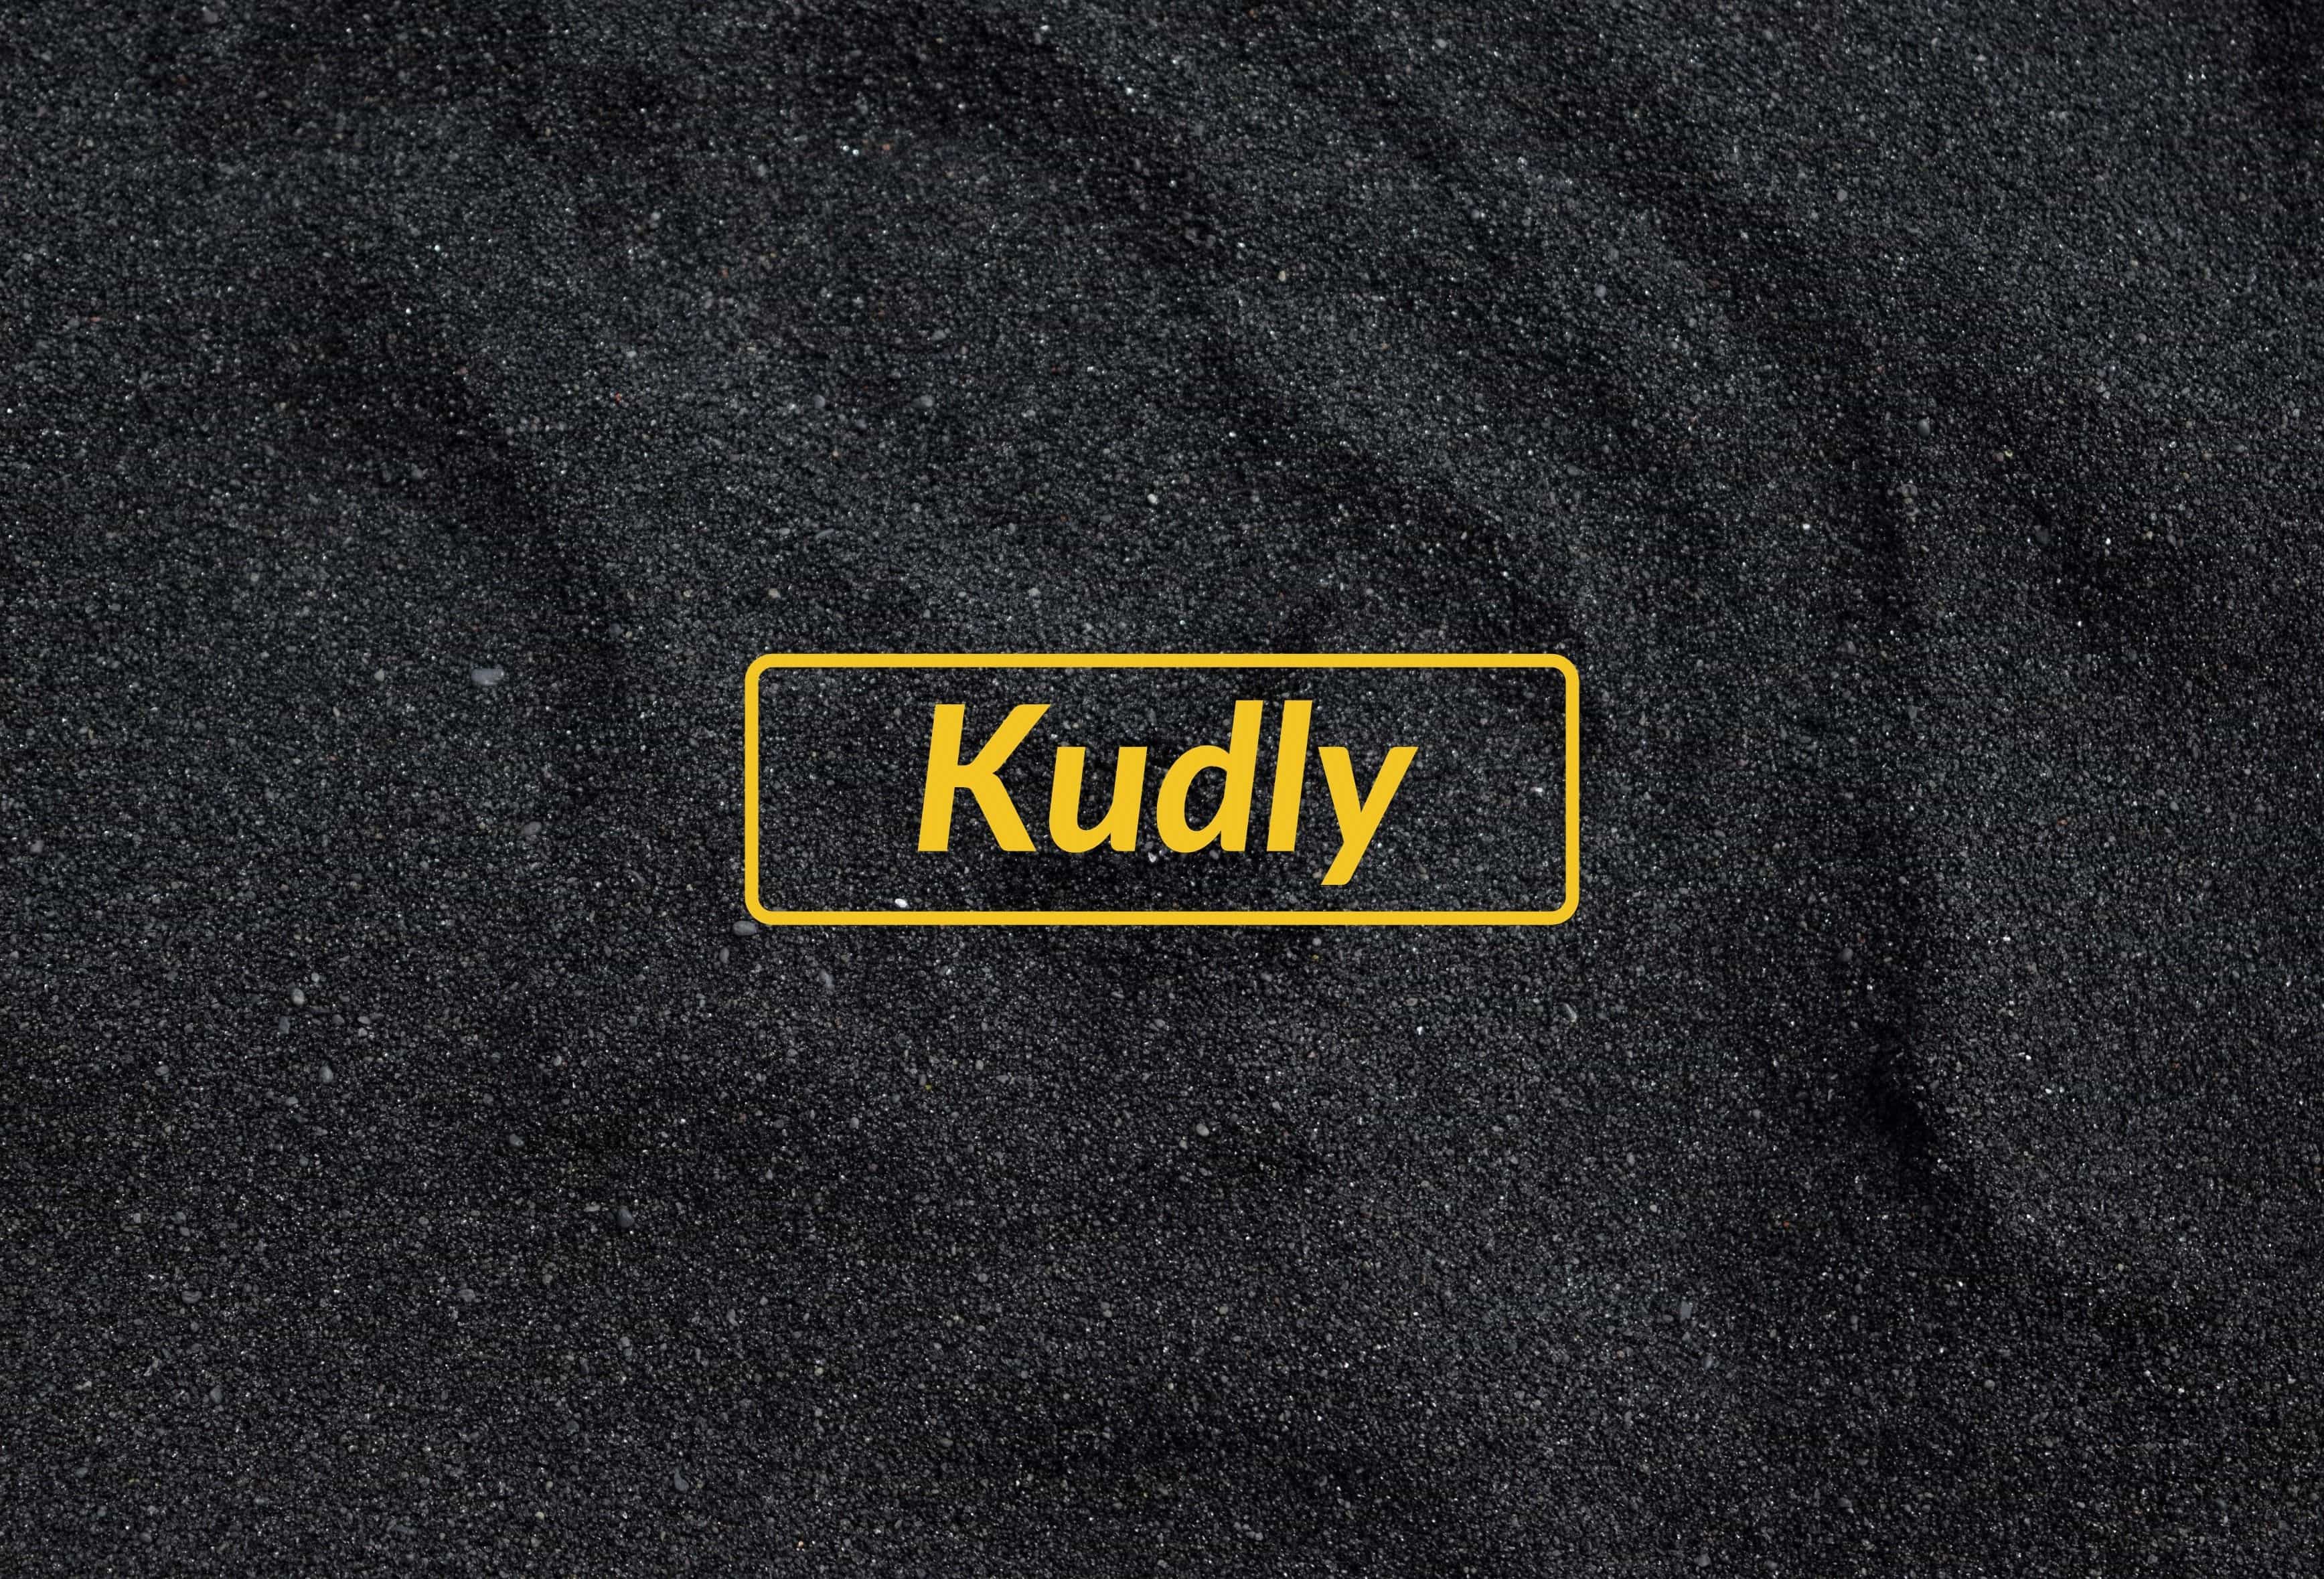 Kudly